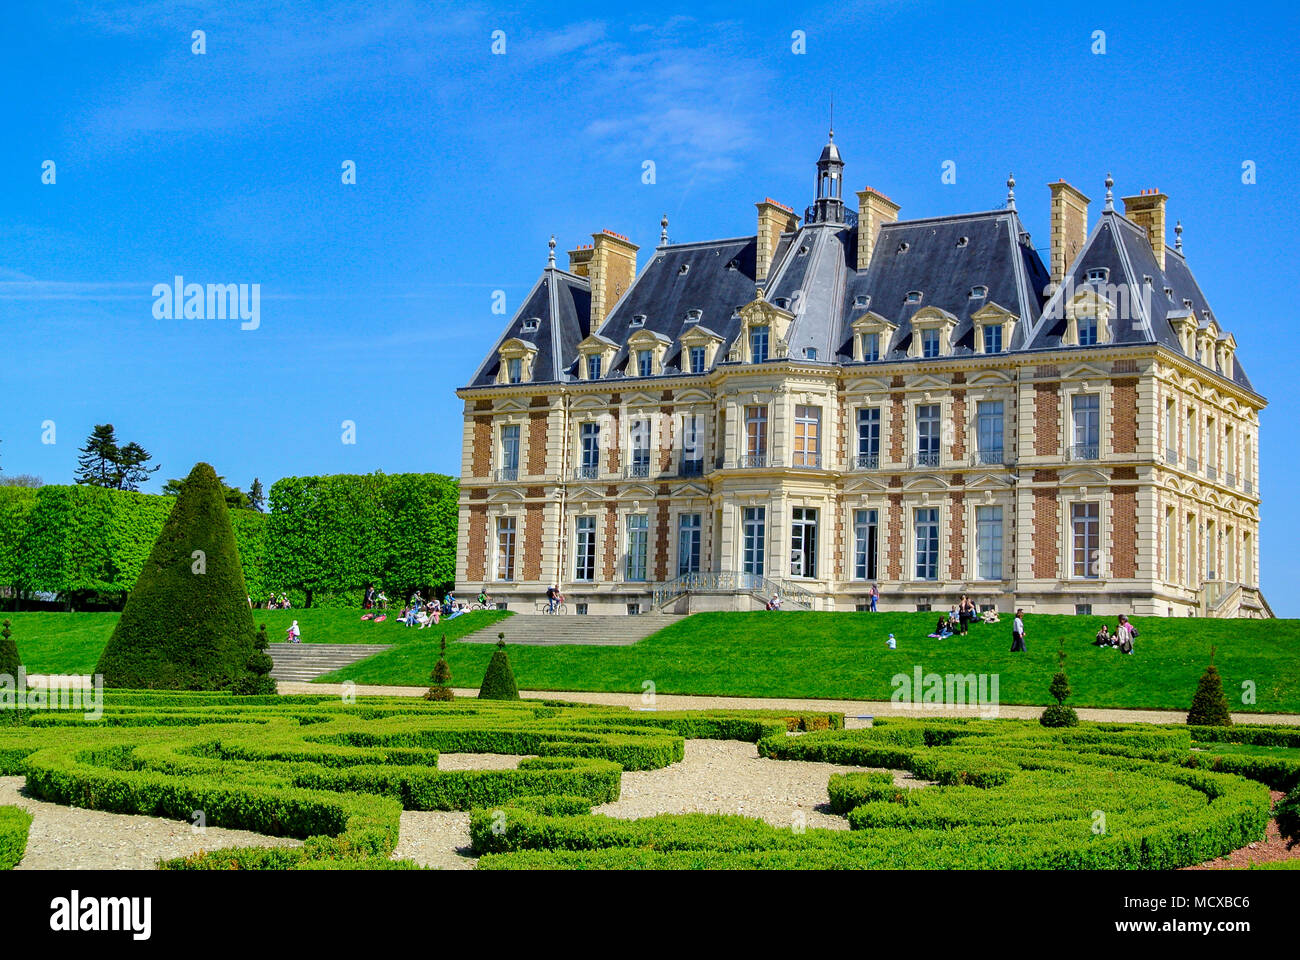 Chateau de Sceux, a castle inside Parc de Sceaux, haut de seine, France Stock Photo